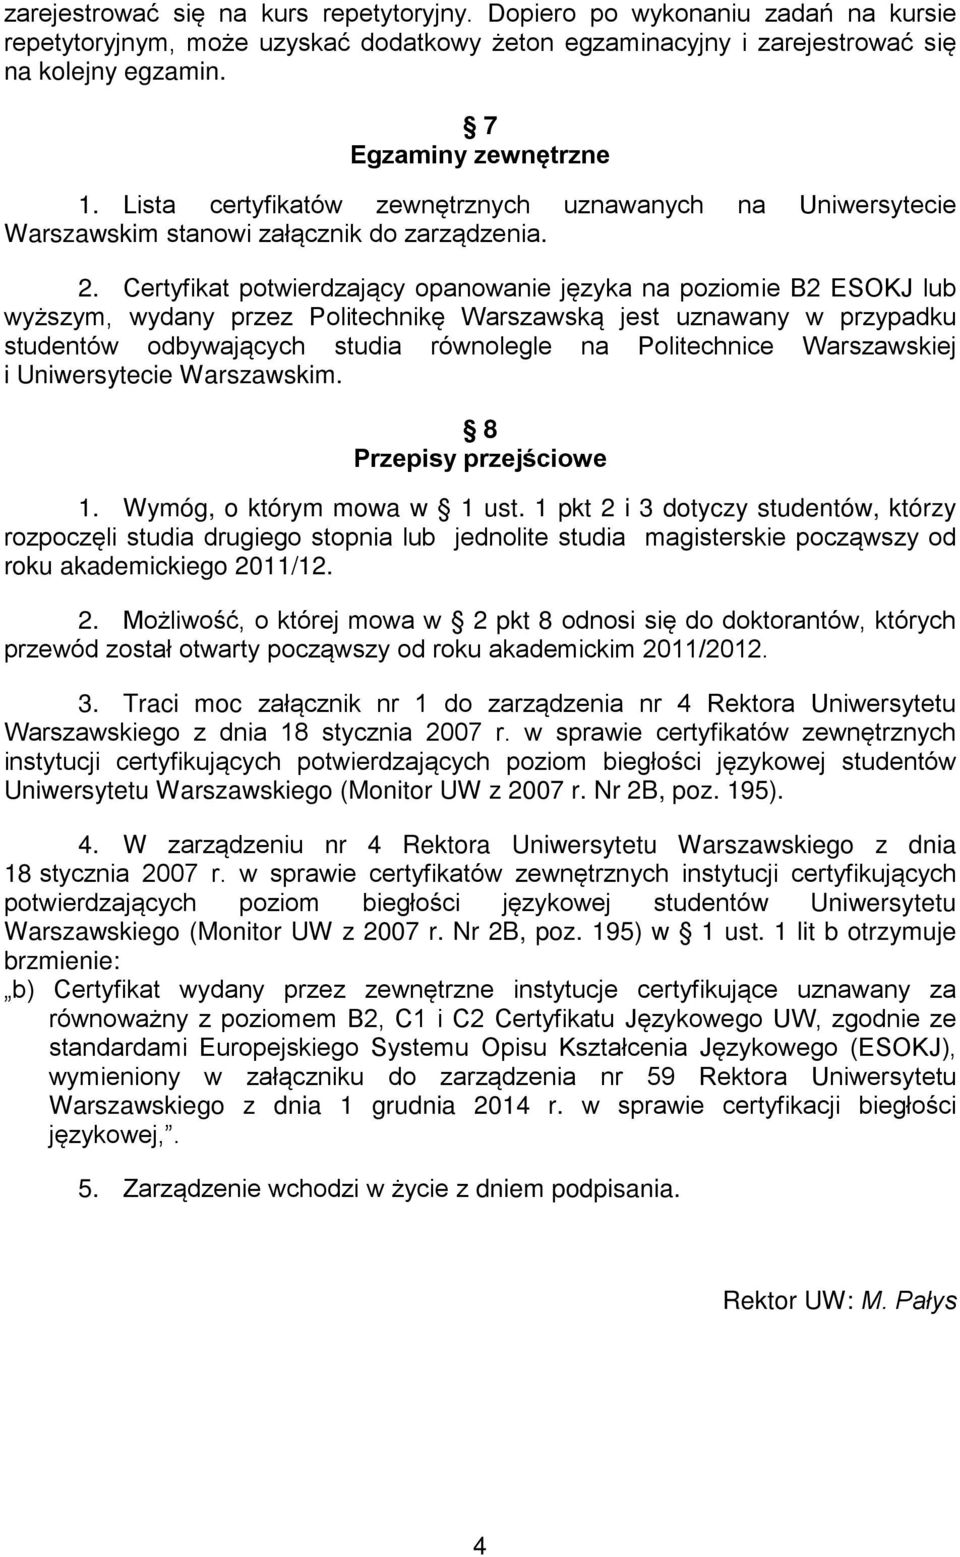 Certyfikat potwierdzający opanowanie języka na poziomie B2 ESOKJ lub wyższym, wydany przez Politechnikę Warszawską jest uznawany w przypadku studentów odbywających studia równolegle na Politechnice